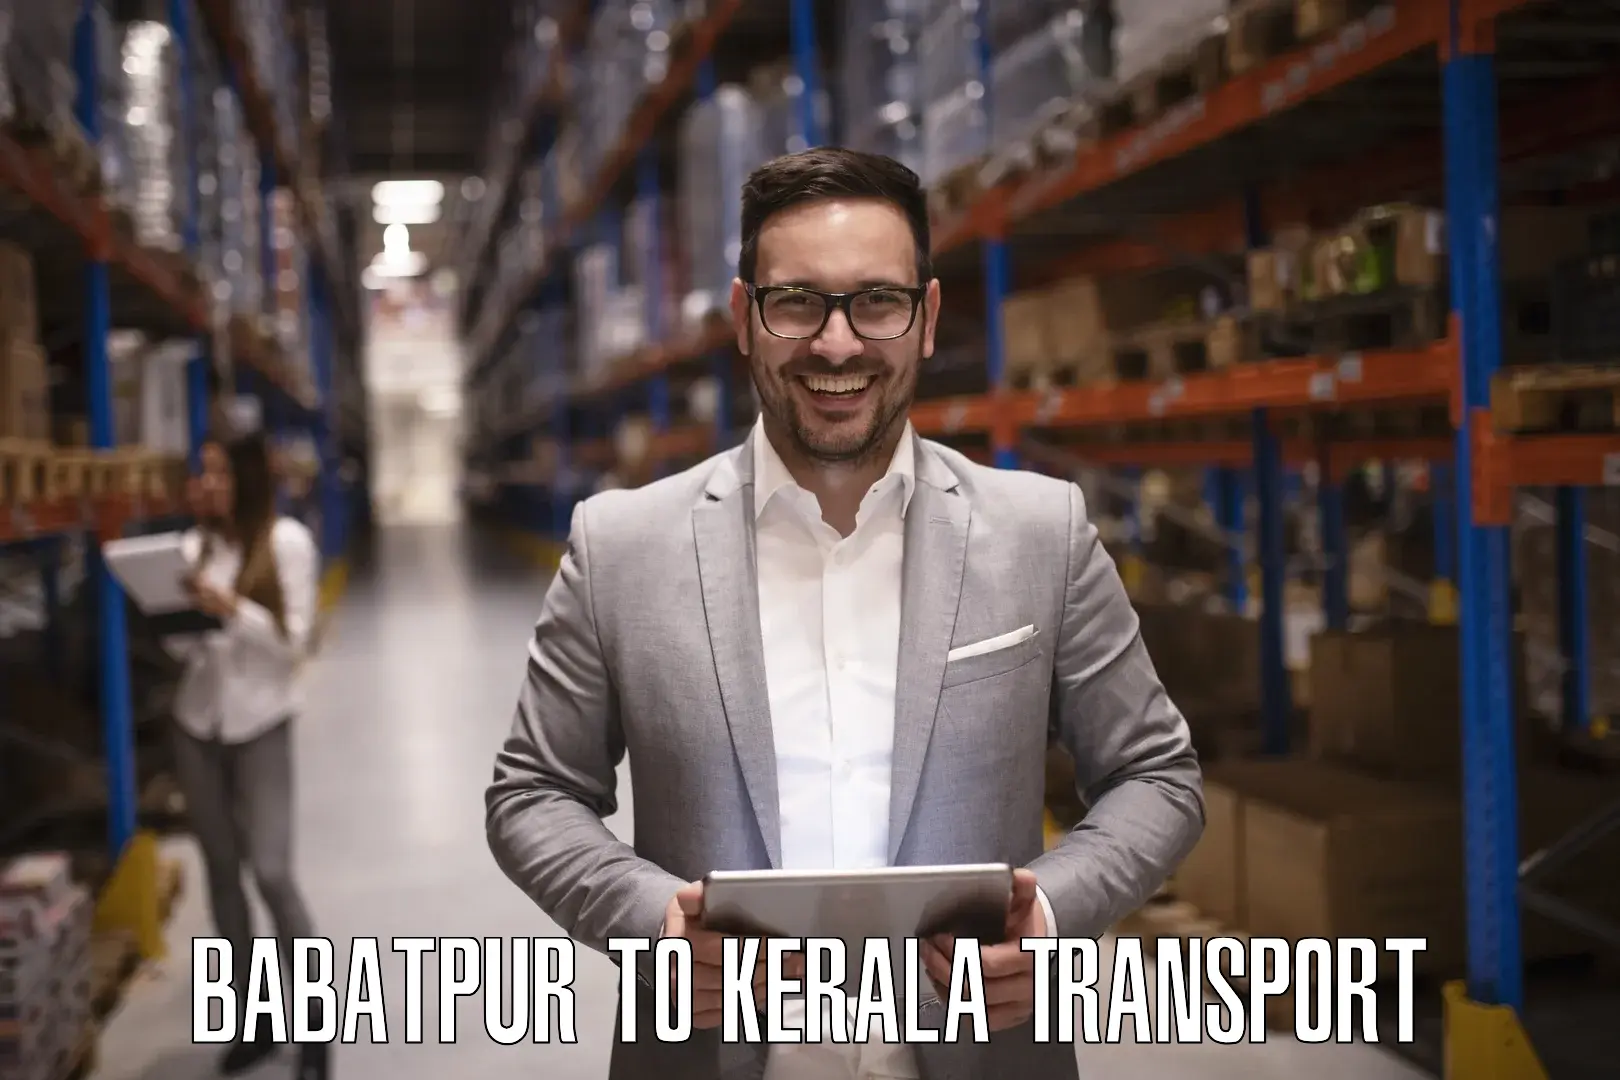 Transport in sharing Babatpur to Kerala